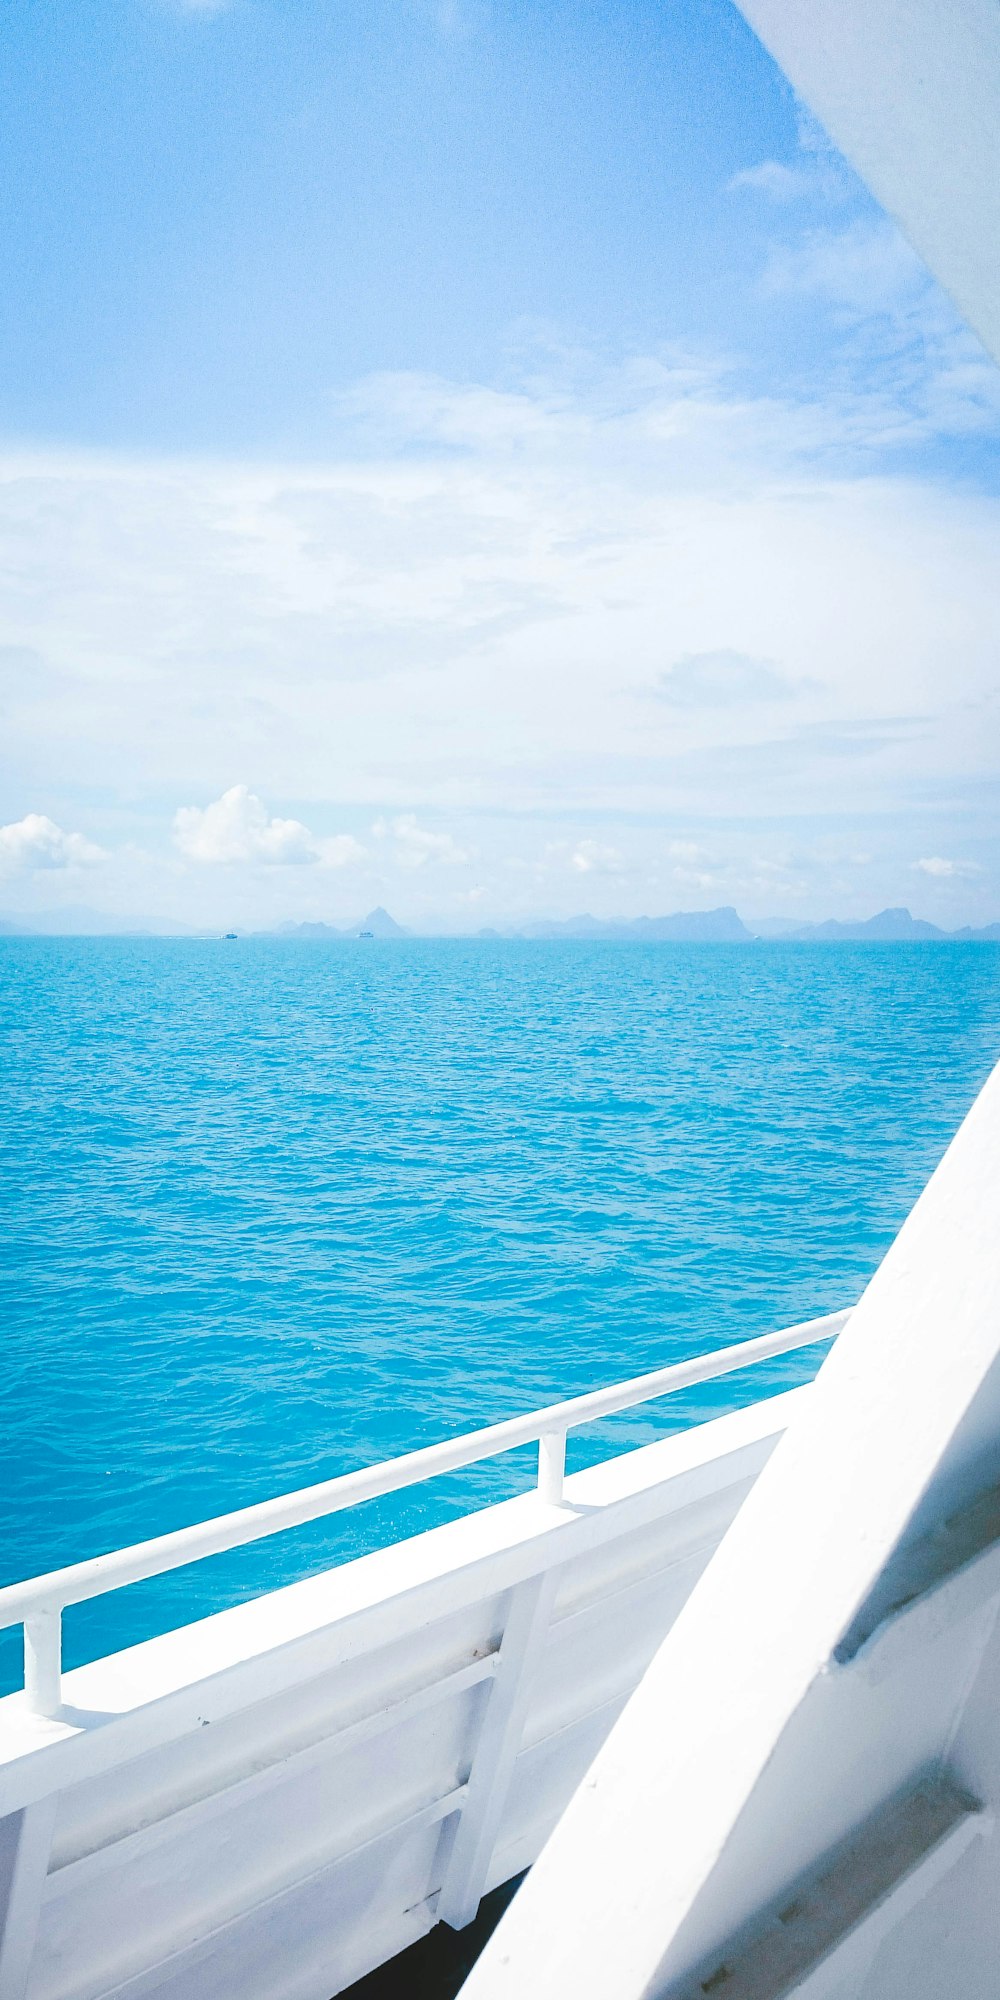 white boat voyaging on ocean during daytime